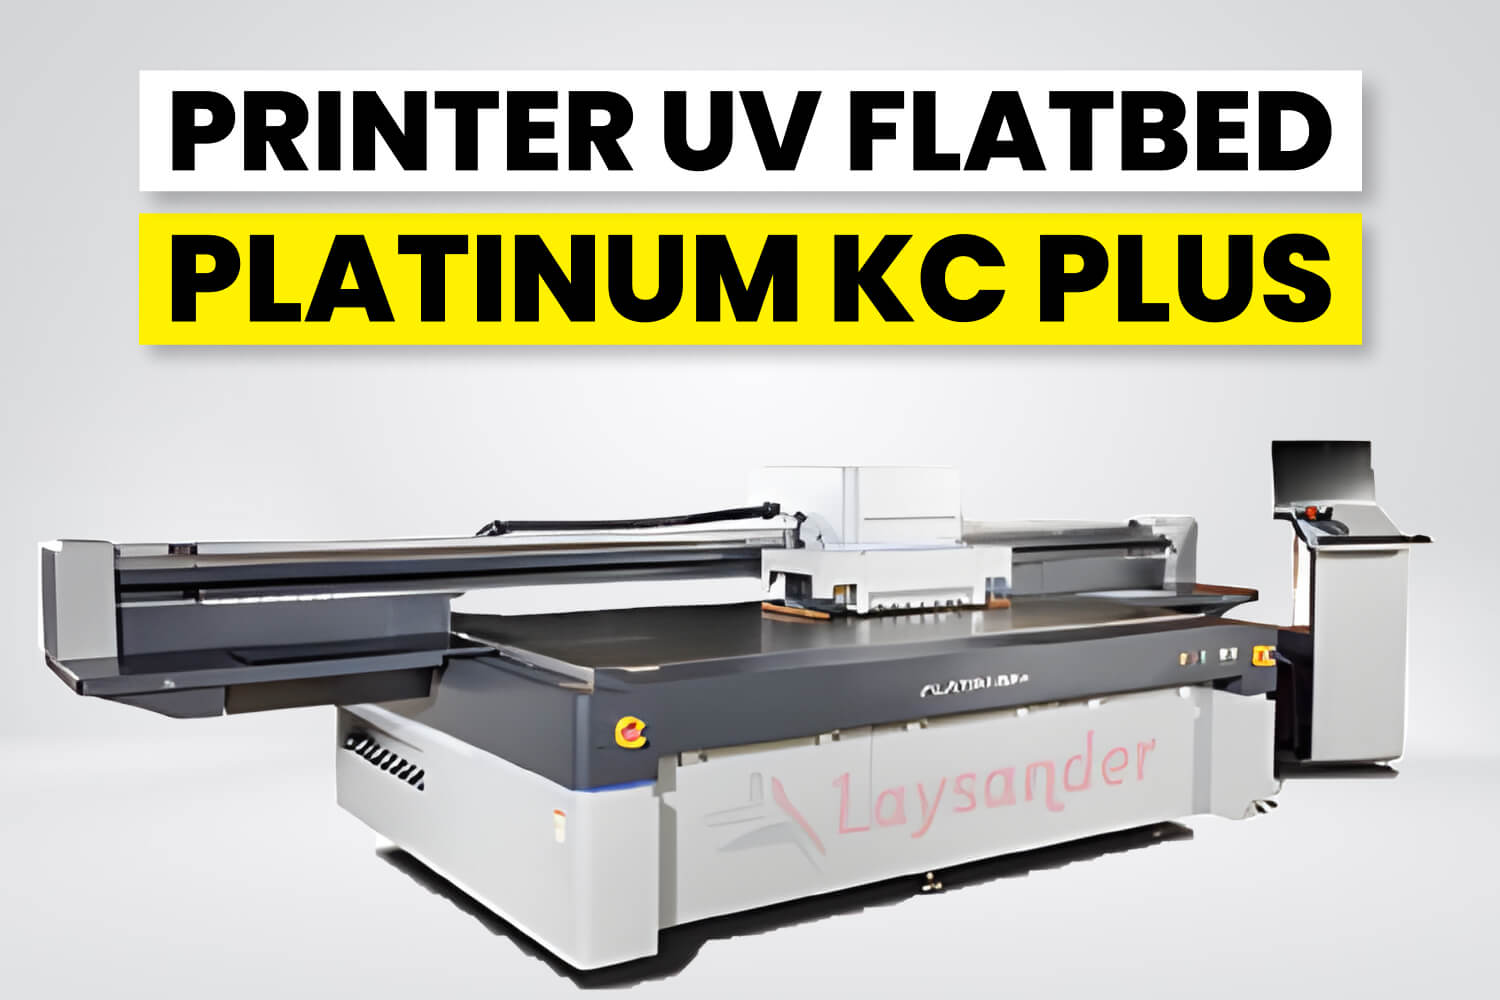 Printer Uv Flatbed Platinum Kc Plus